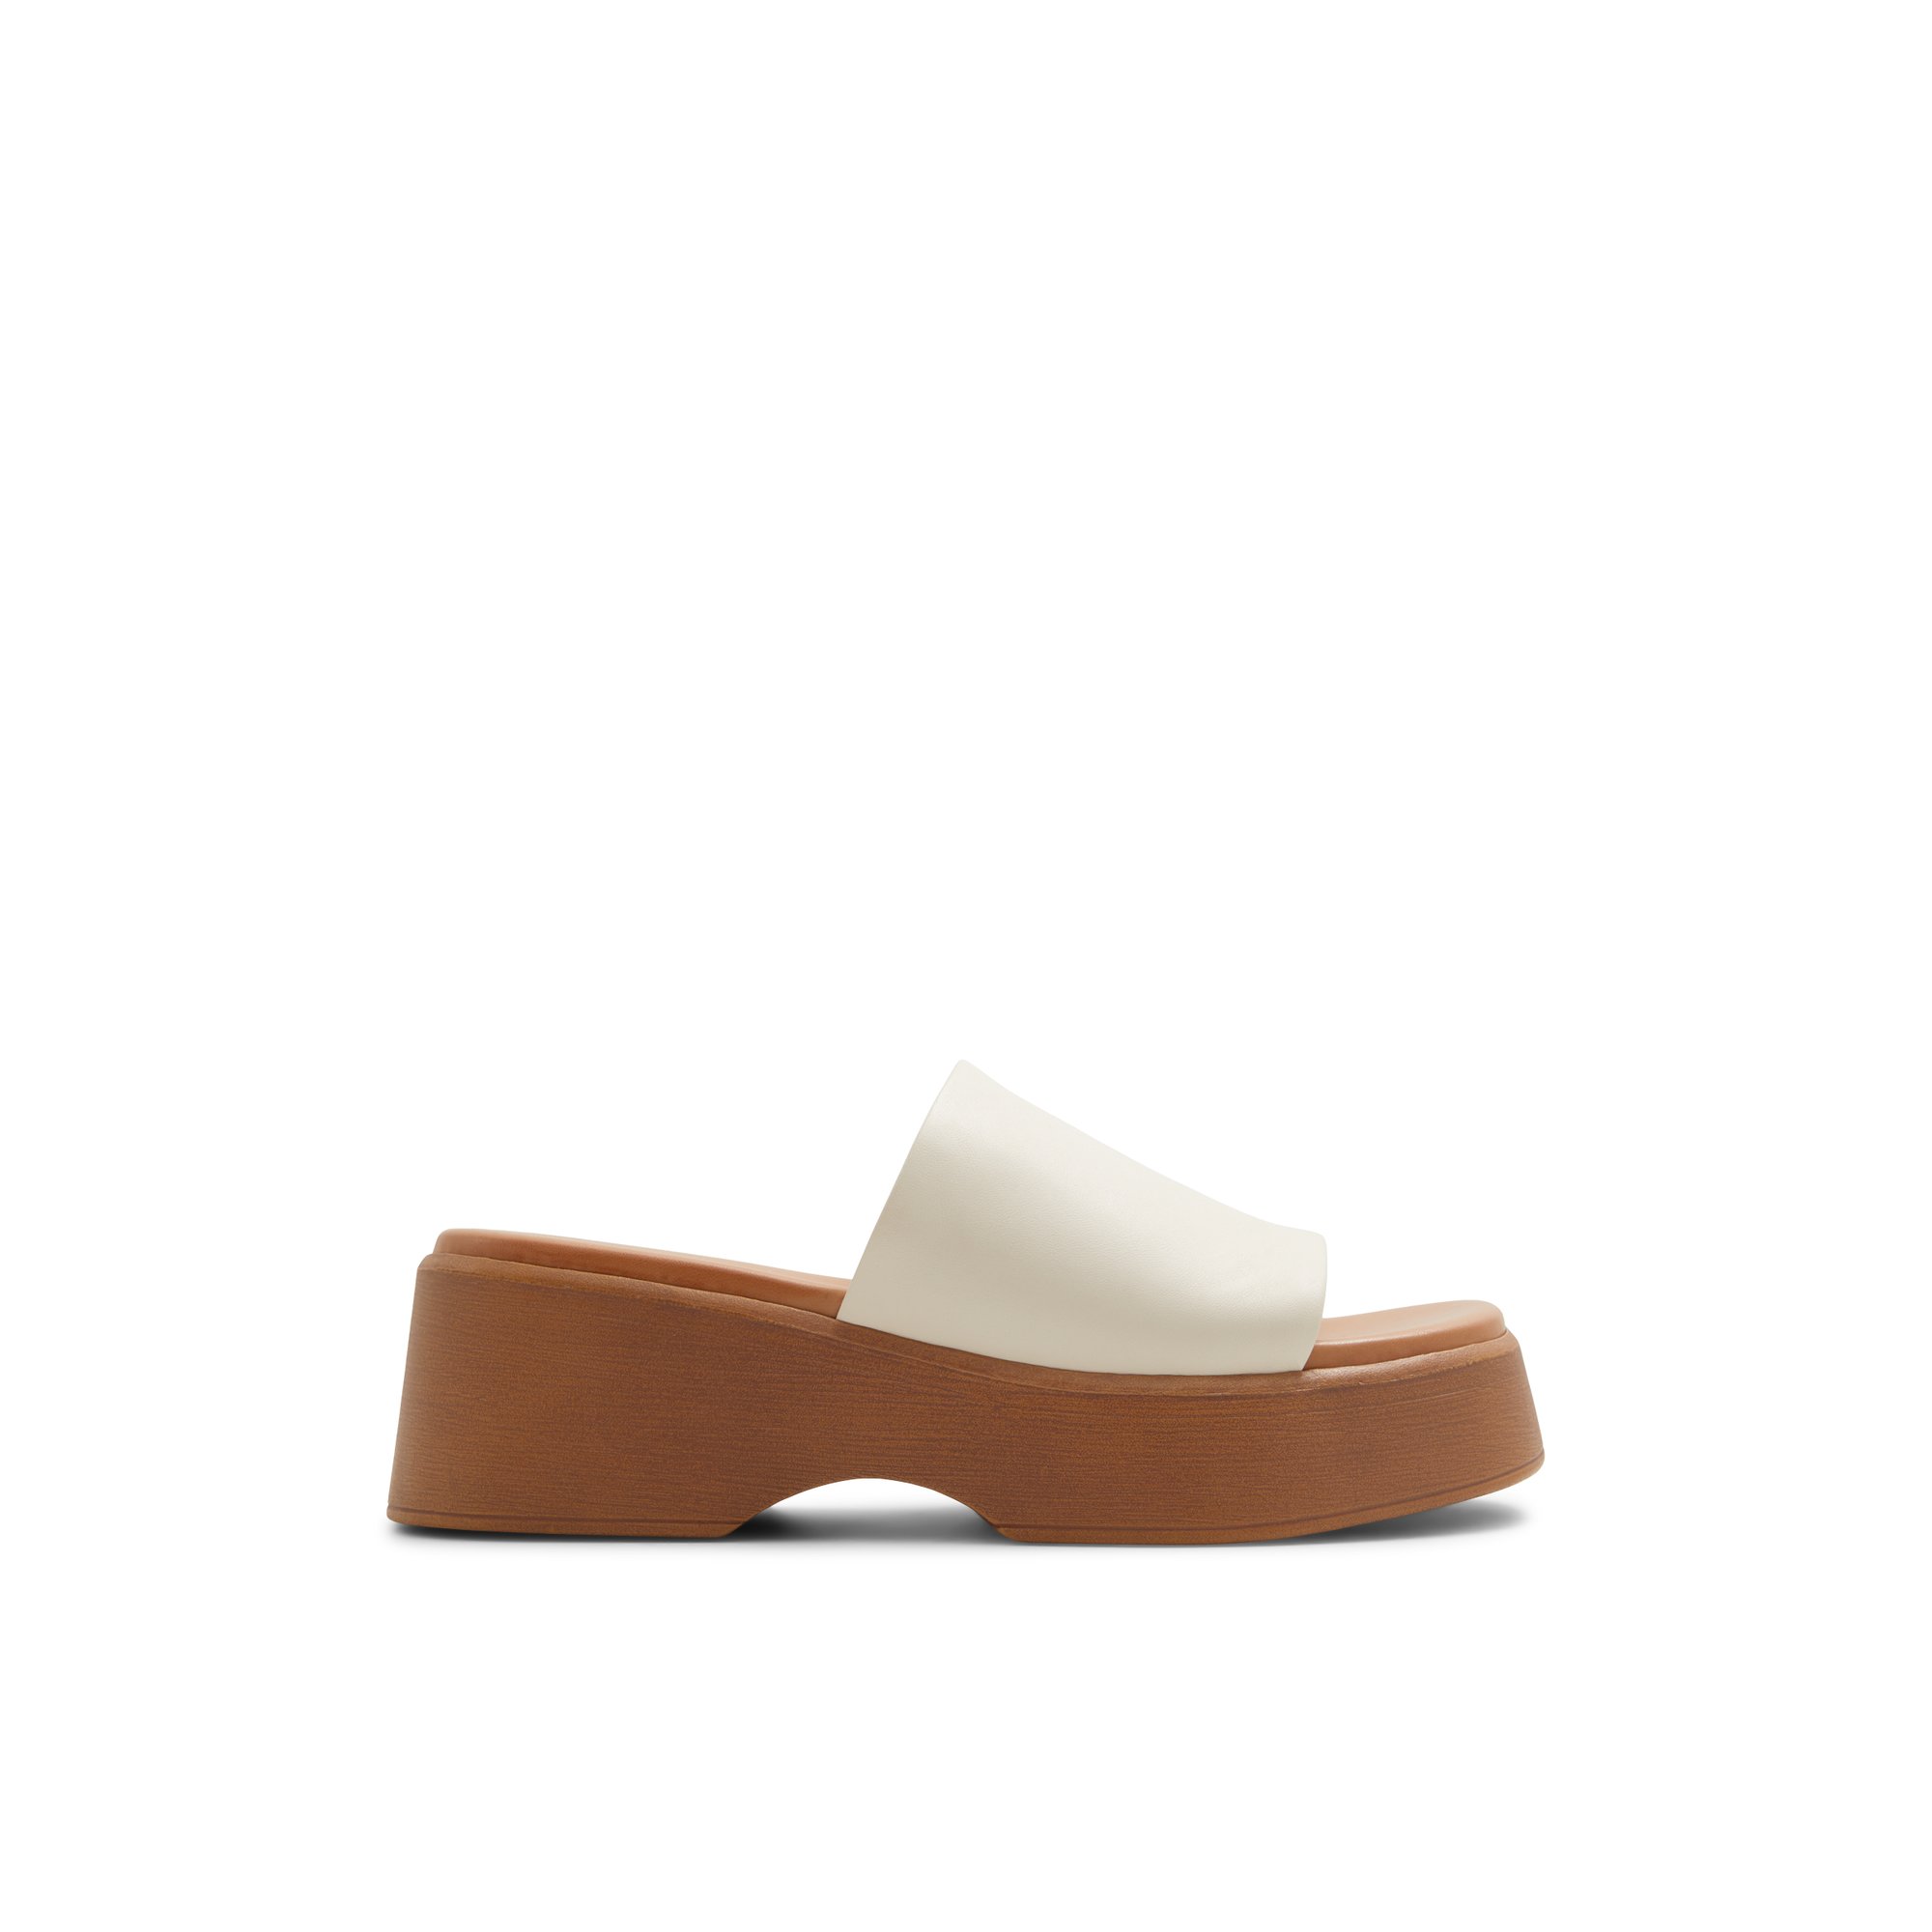 ALDO Yassu - Women's Sandals Platform - White